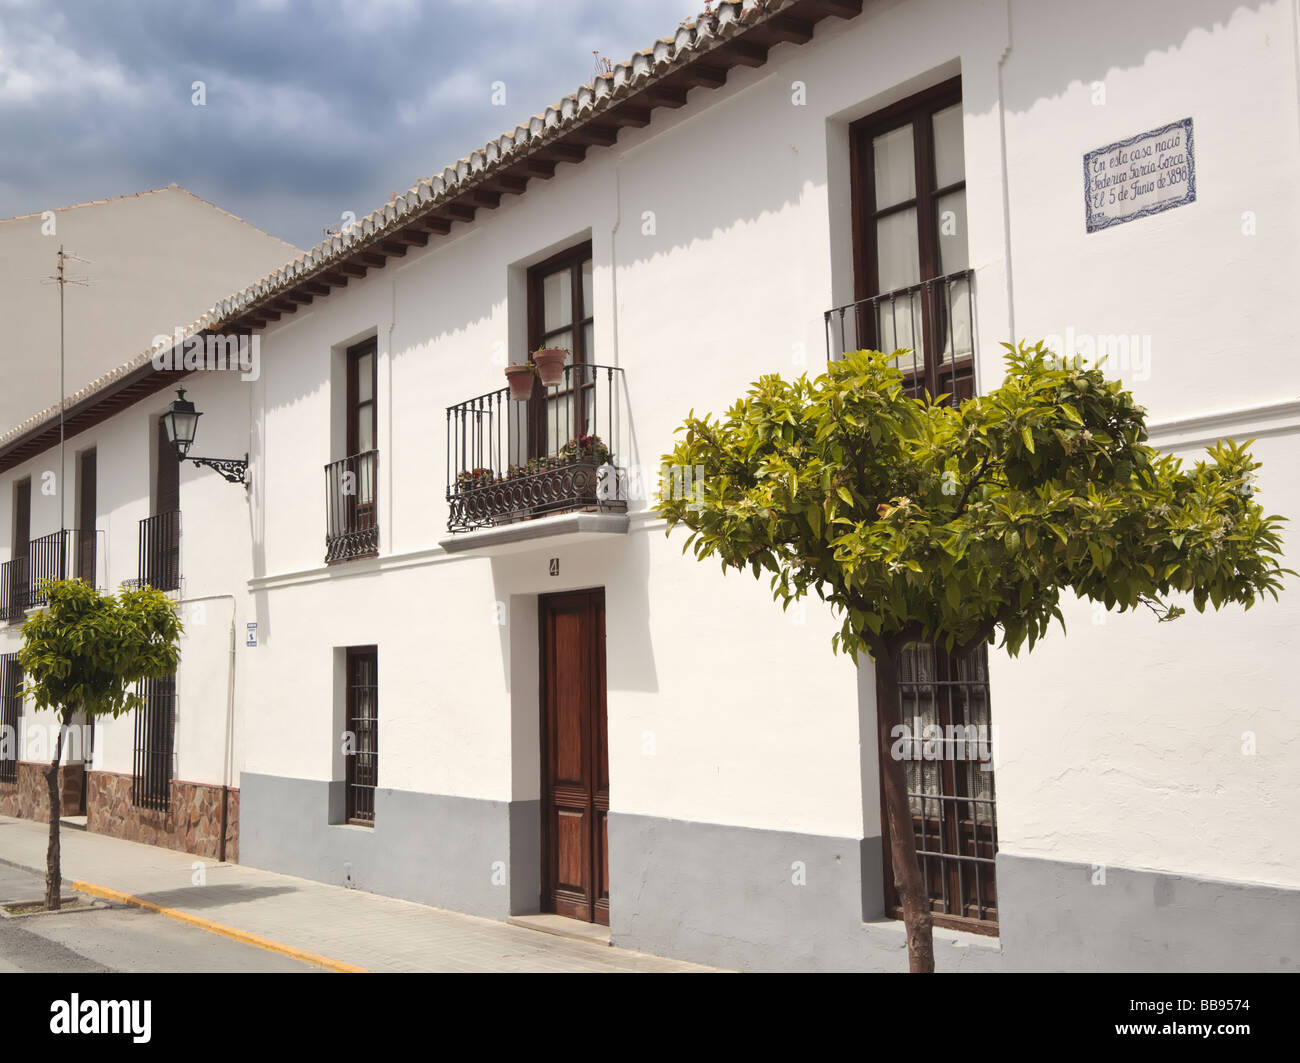 Birthplace of poet Federico Garcia Lorca 1898 to 1936 in Fuente Vaqueros, Granada Province, Spain. Stock Photo